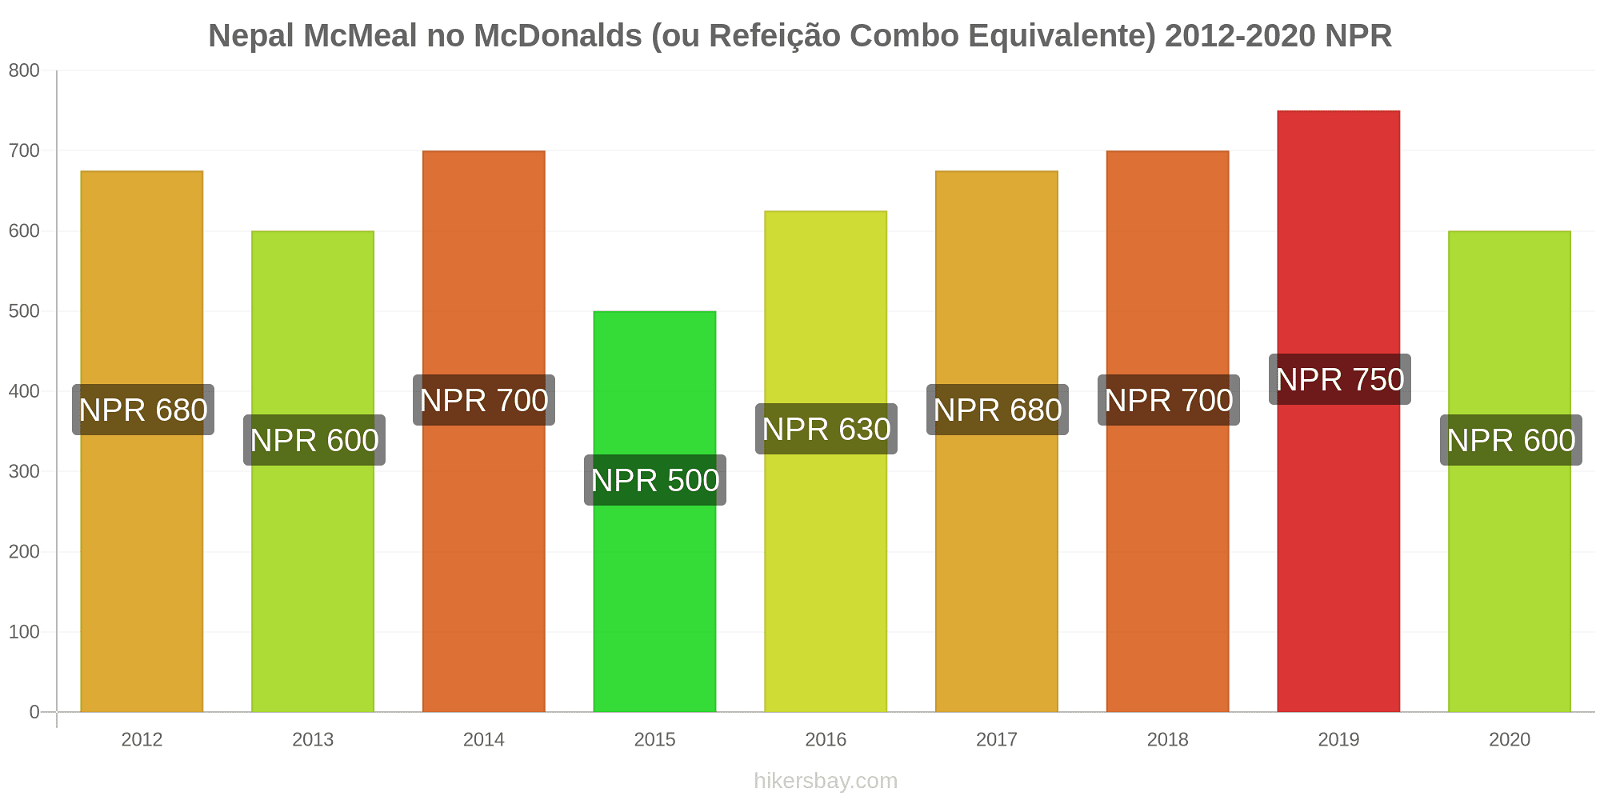 Nepal variação de preço McMeal no McDonald ' s (ou refeição Combo equivalente) hikersbay.com